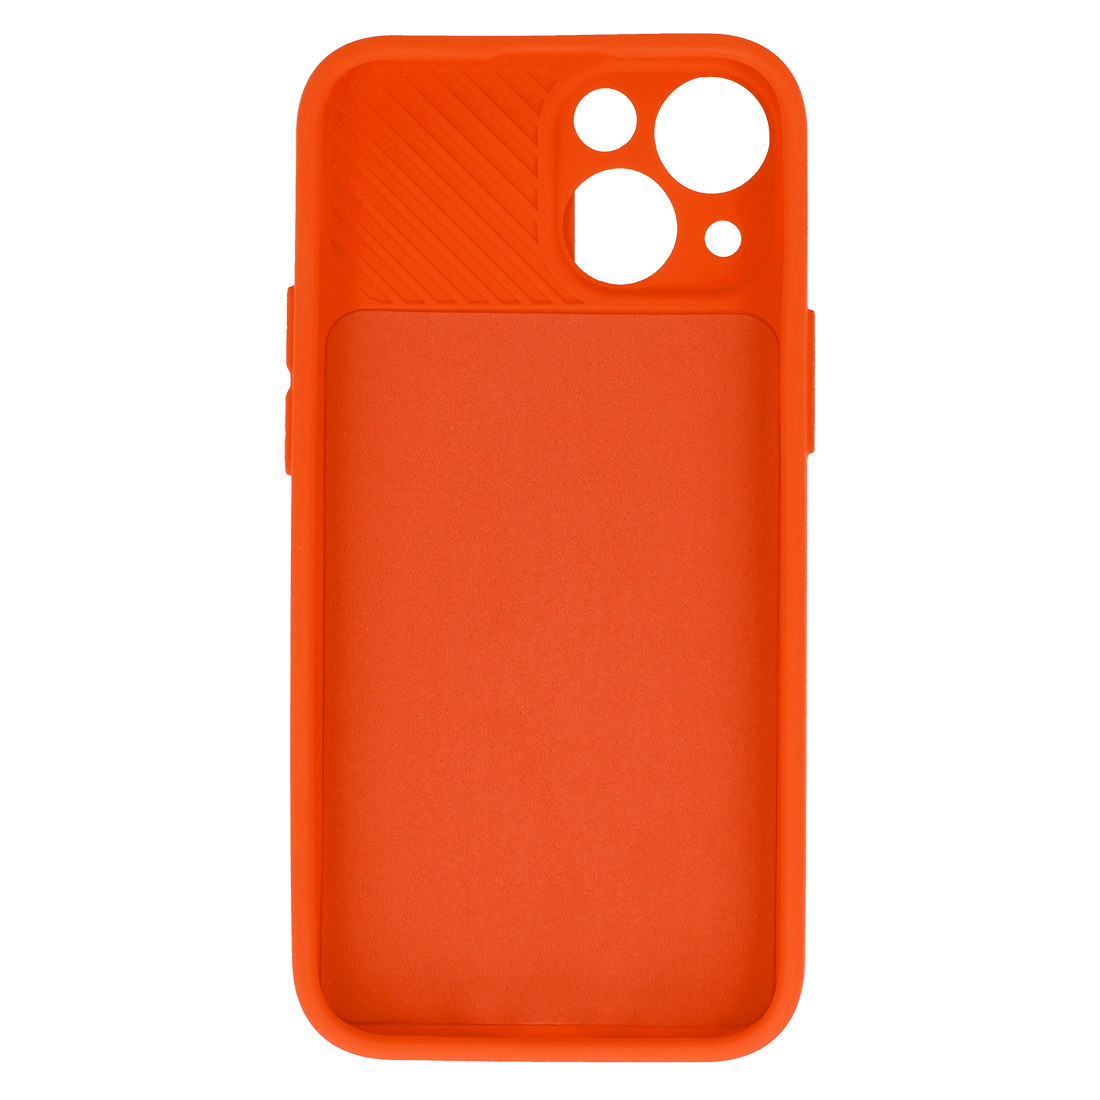 Pokrowiec etui z elastycznego TPU Camshield Soft Case pomaraczowe APPLE iPhone 11 Pro / 5